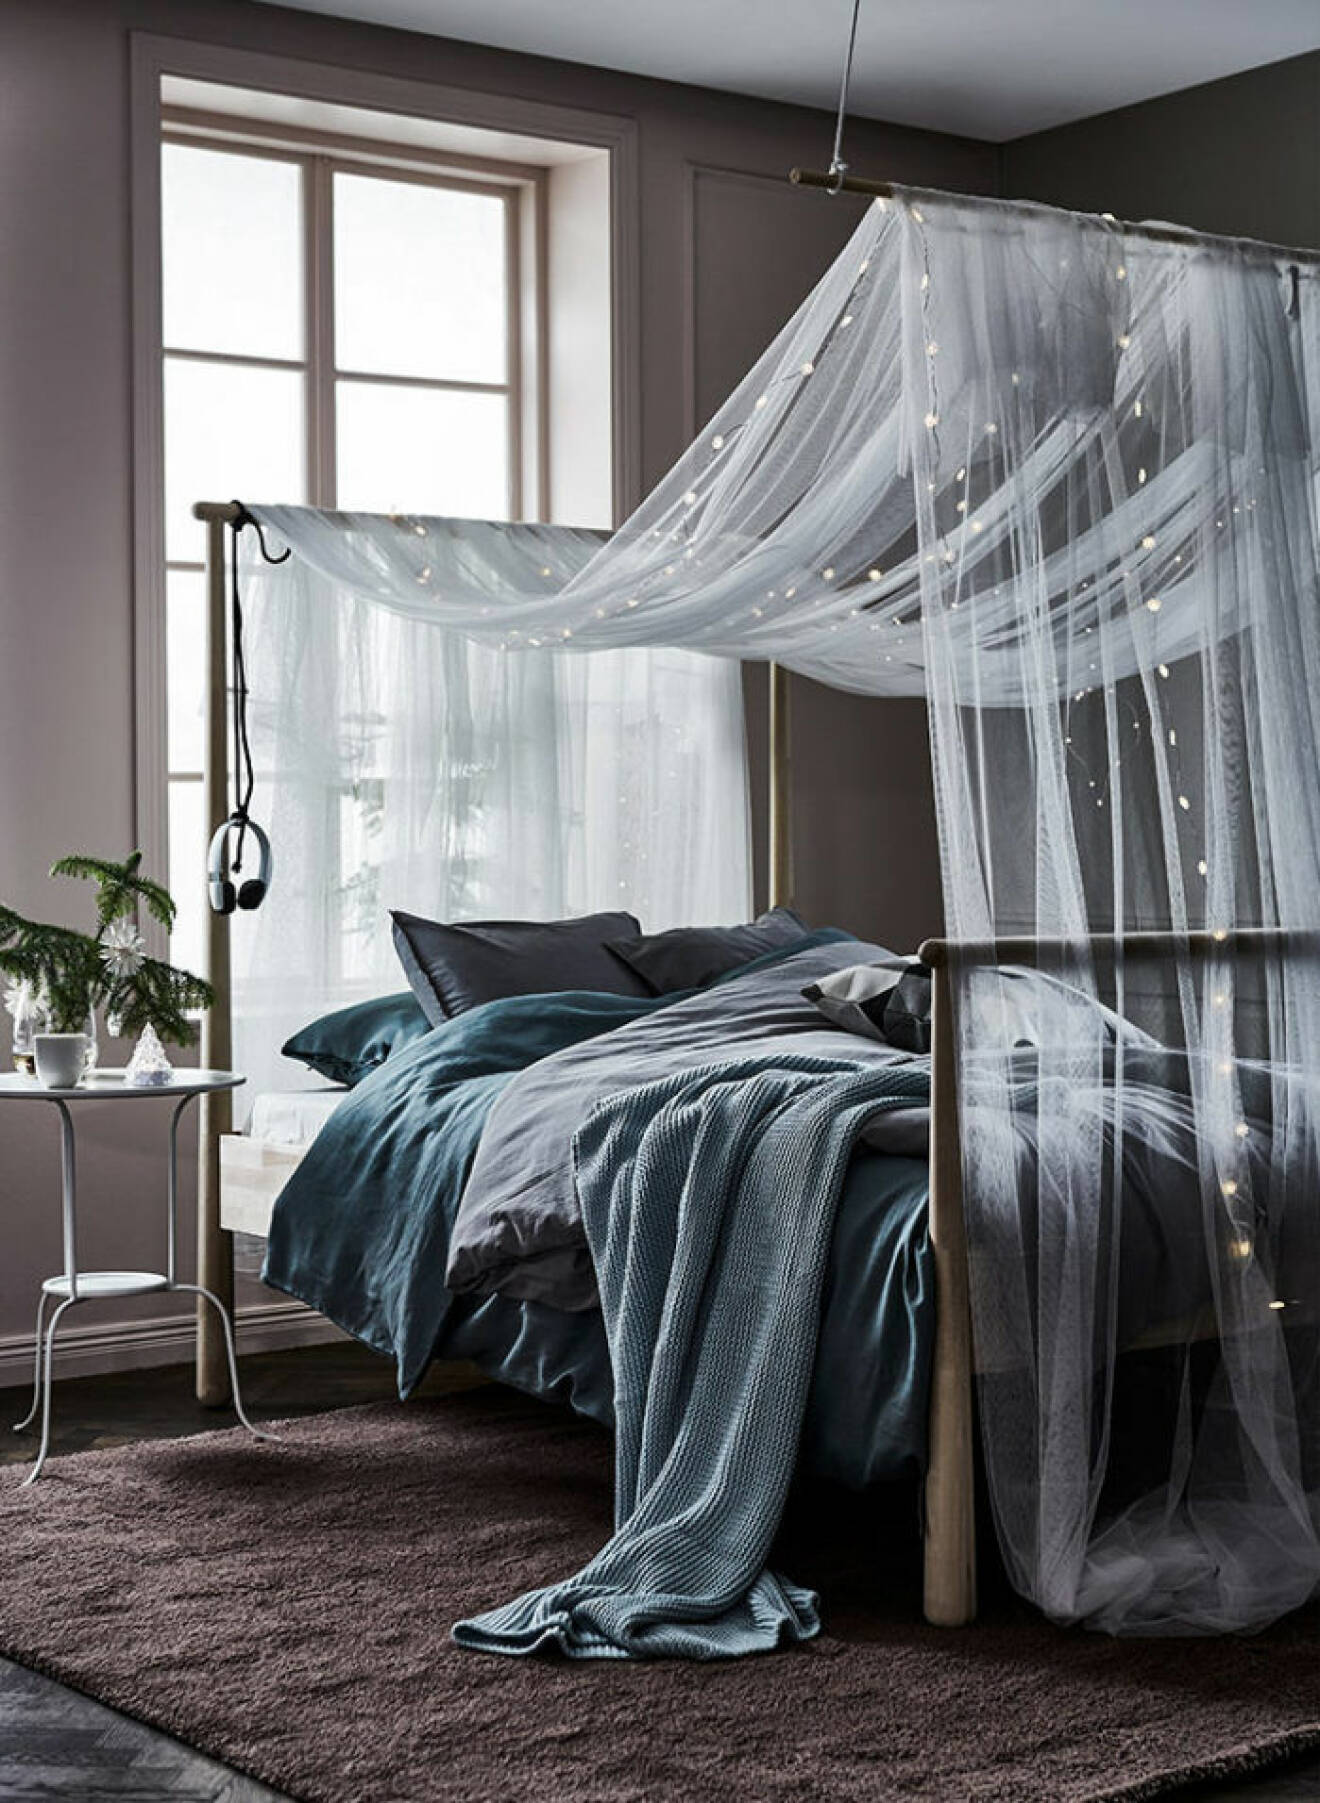 Ljusgråa sängkläder möter fin sänghimmel med lampor